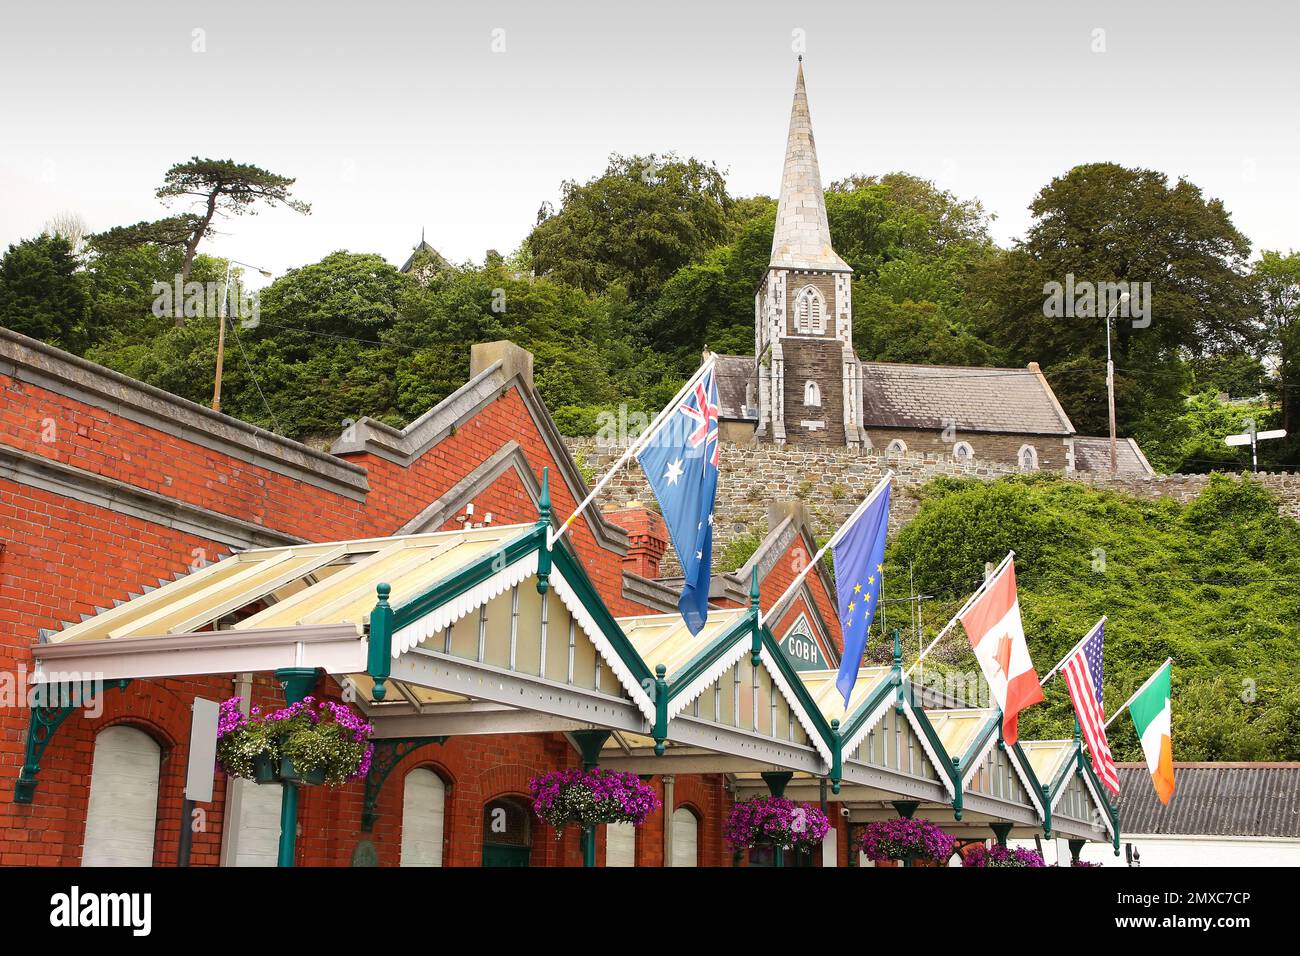 Kreuzfahrtanleger aus rotem Backstein und Heritage Center, dekoriert mit Flaggen der Welt und Cobh-Museum, das sich in der Schottischen Kirche, Cobh, in der Nähe von Cork, Irland befindet Stockfoto